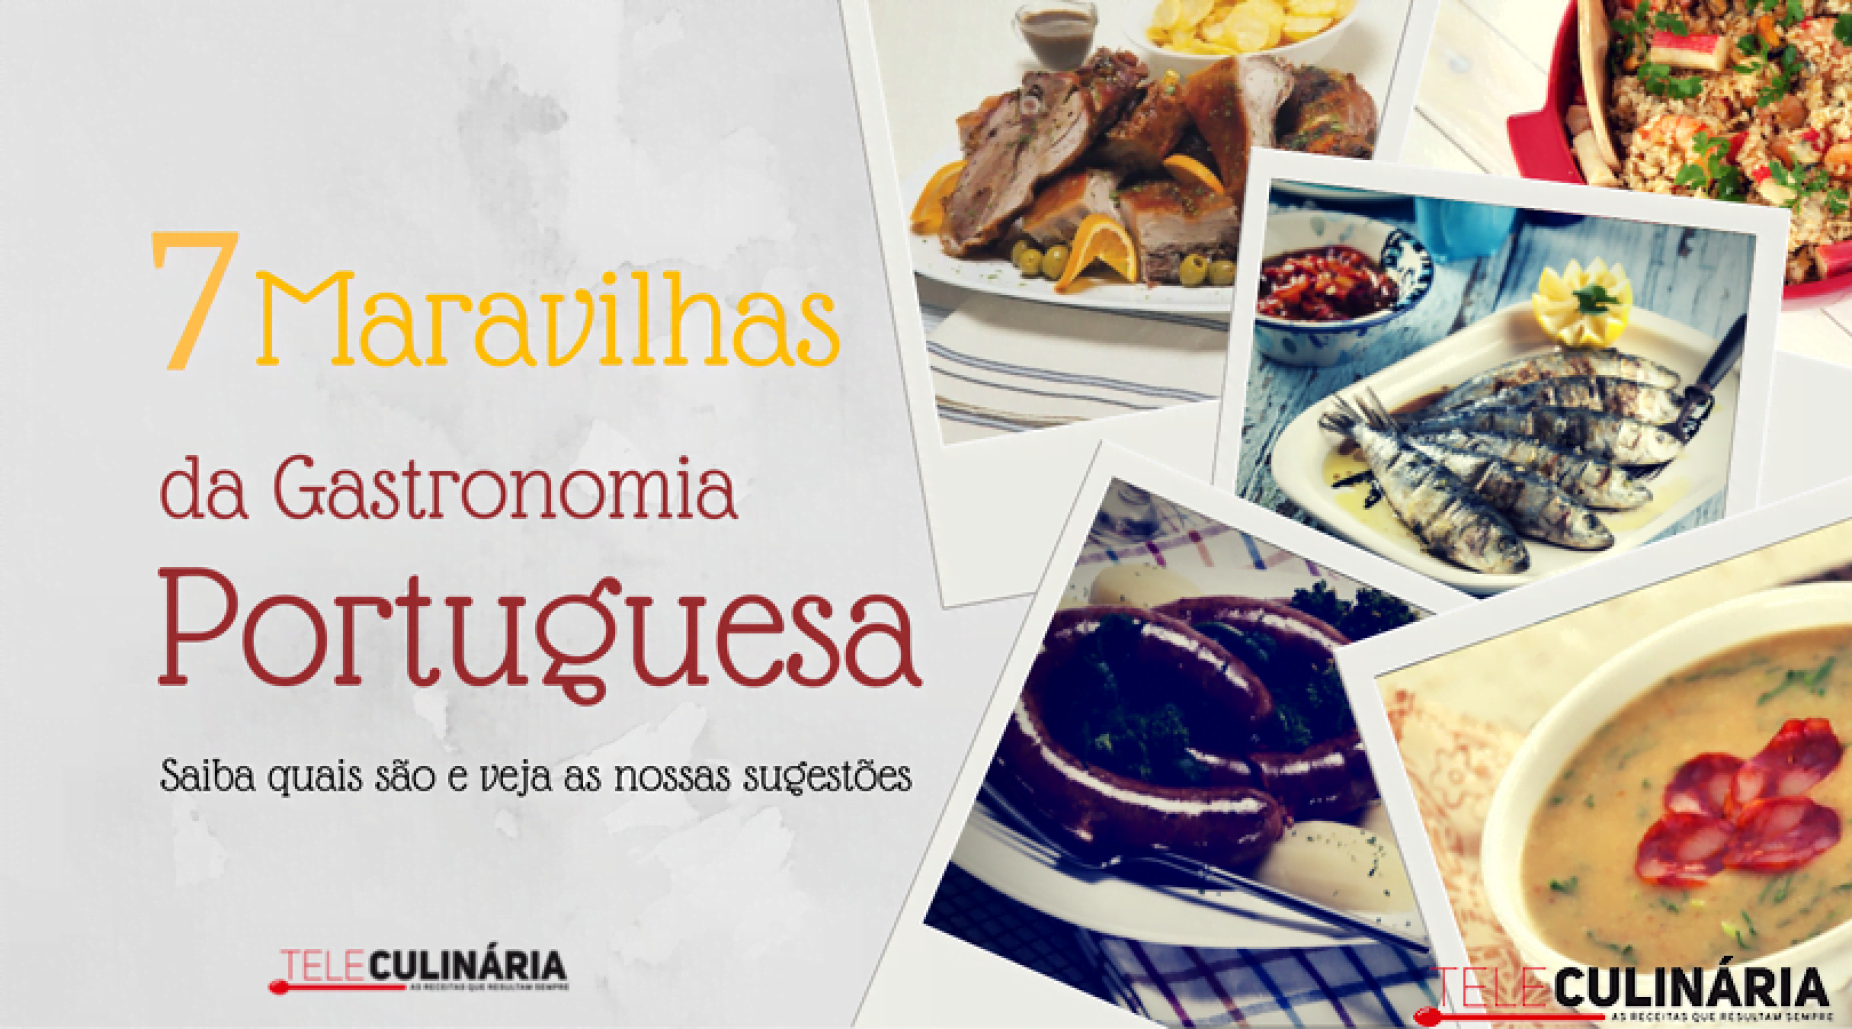 7 maravilhas da gastronomia portuguesa